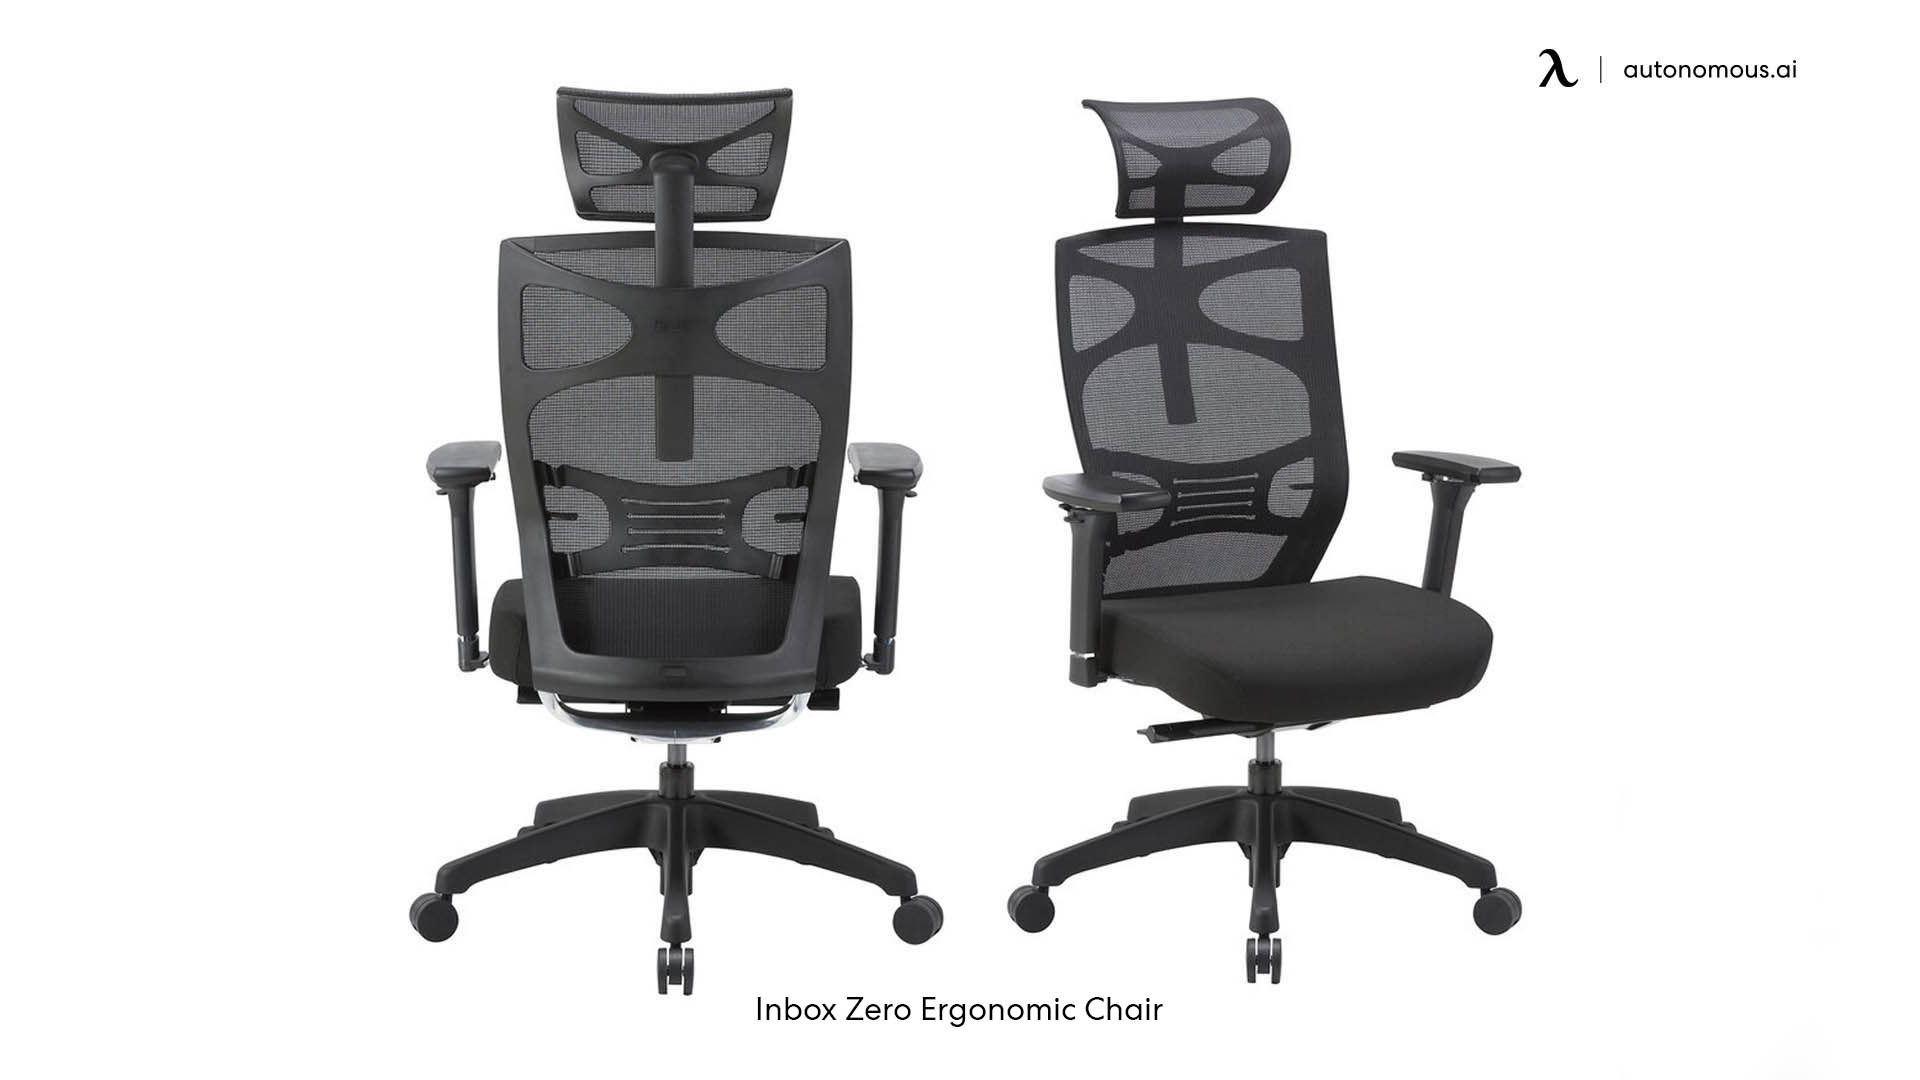 Ergonomic Executive Chair by Inbox Zero